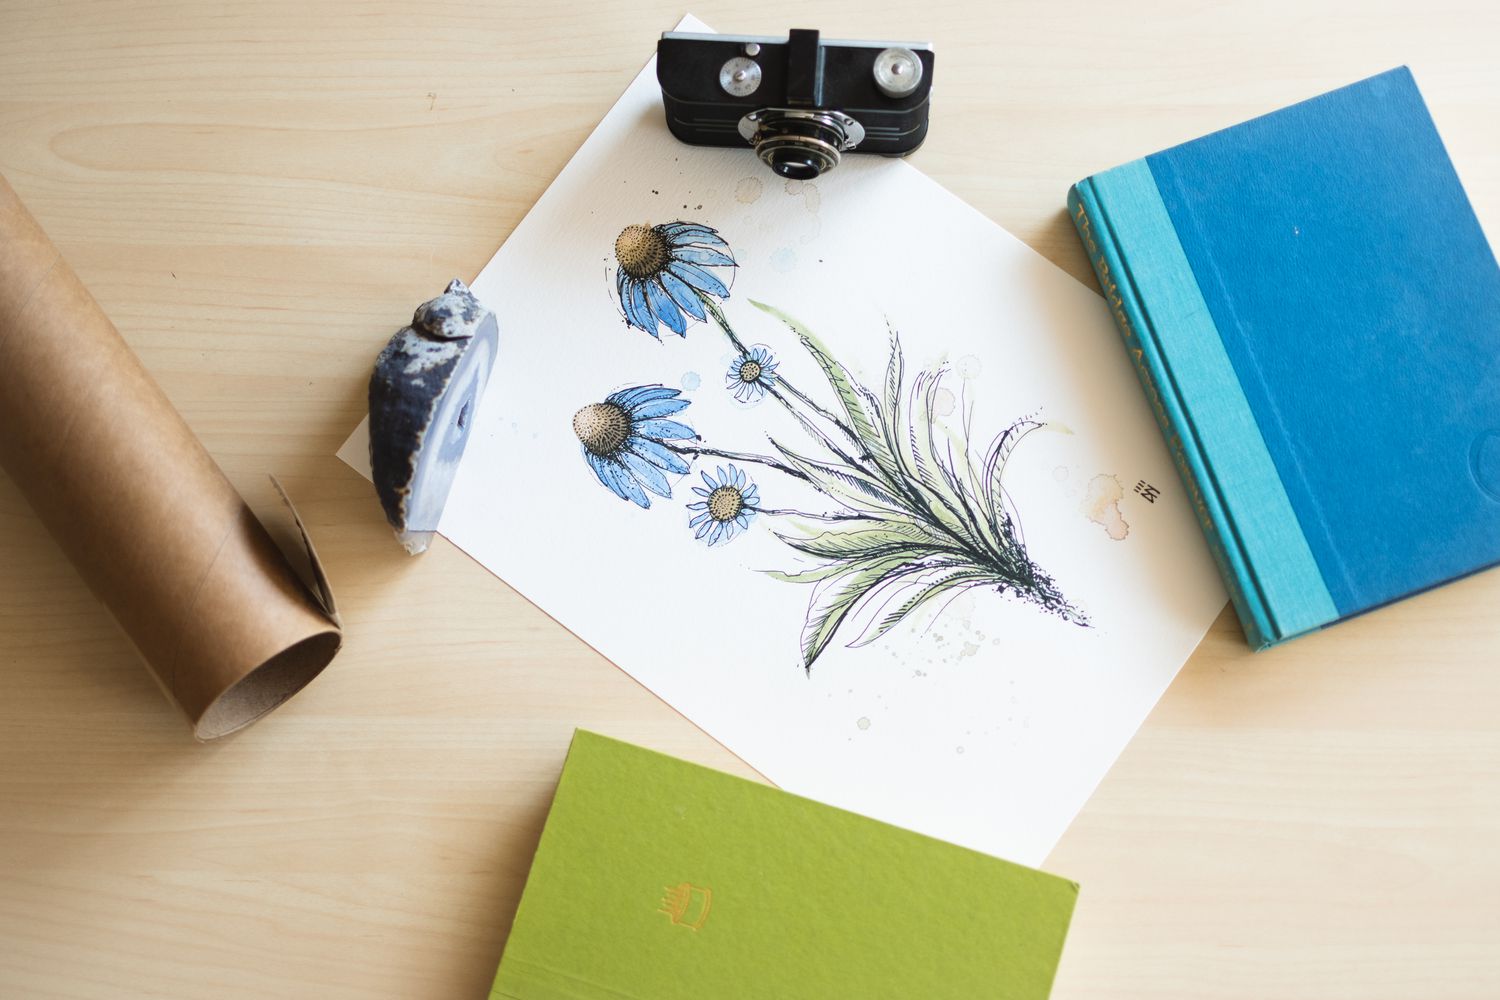 Pôster com flores azuis dispostas em uma superfície com câmera, livros e pedra para achatar 